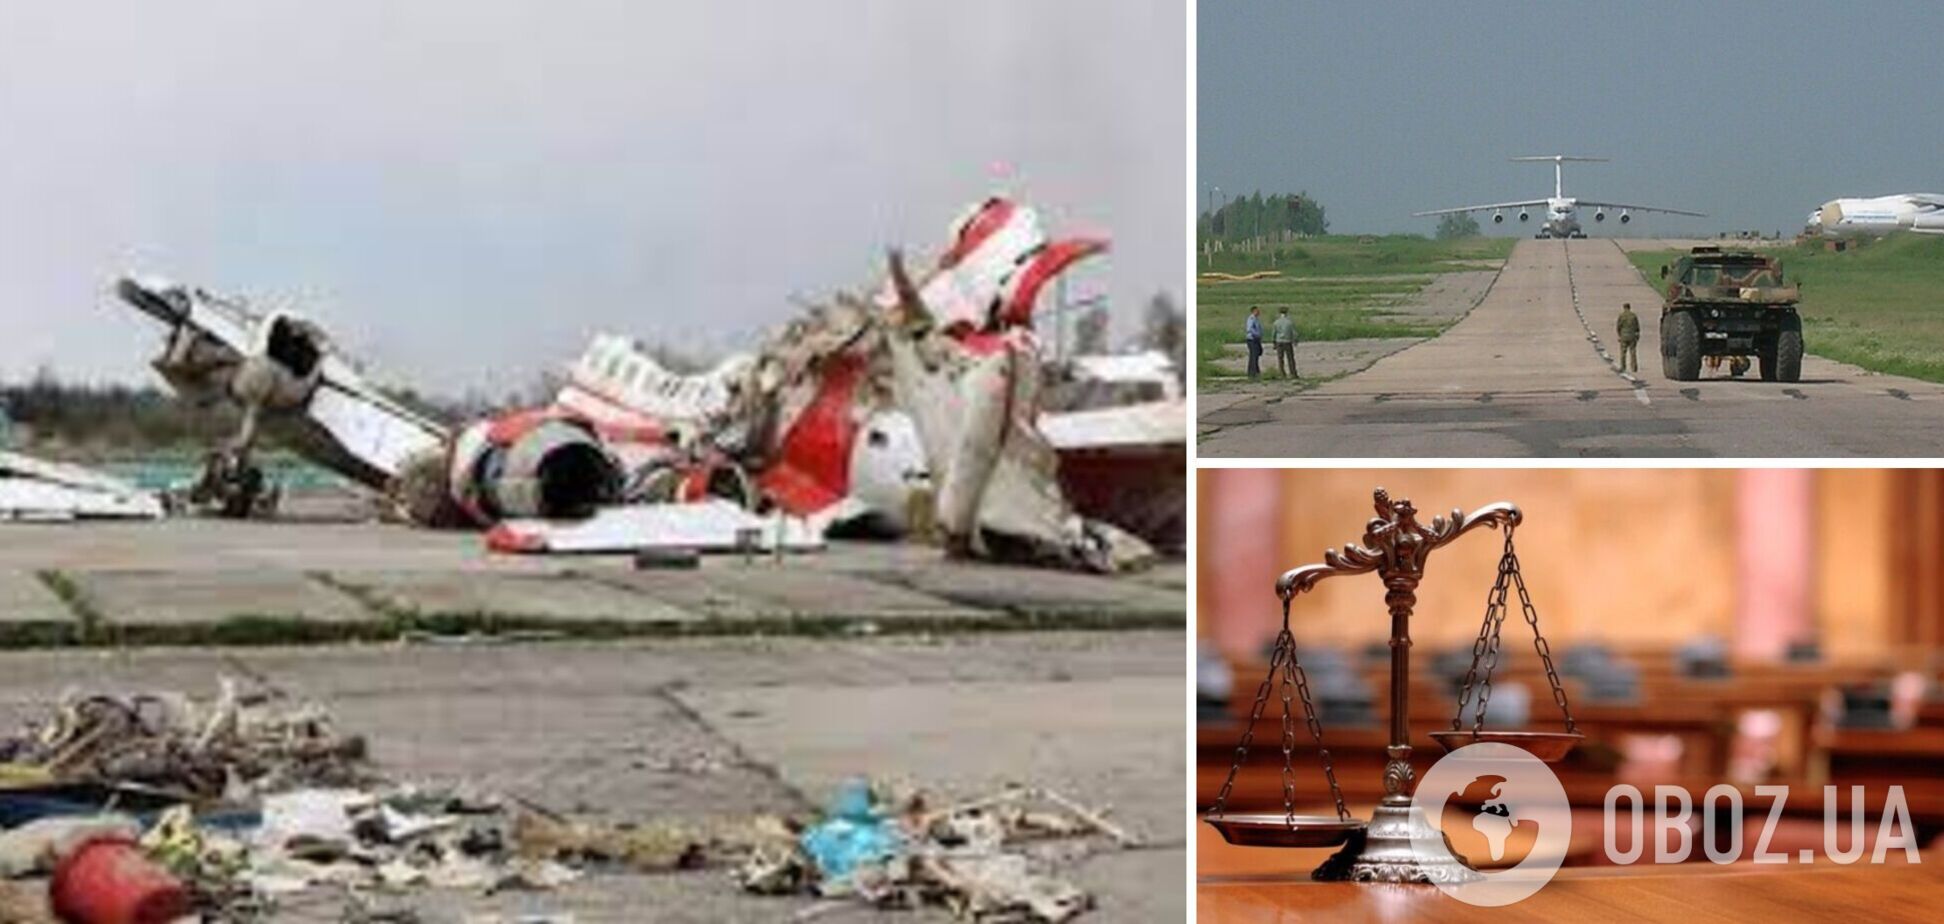 В Польше вынесено решение об аресте инспектора, дежурившего во время аварии самолета в Смоленске